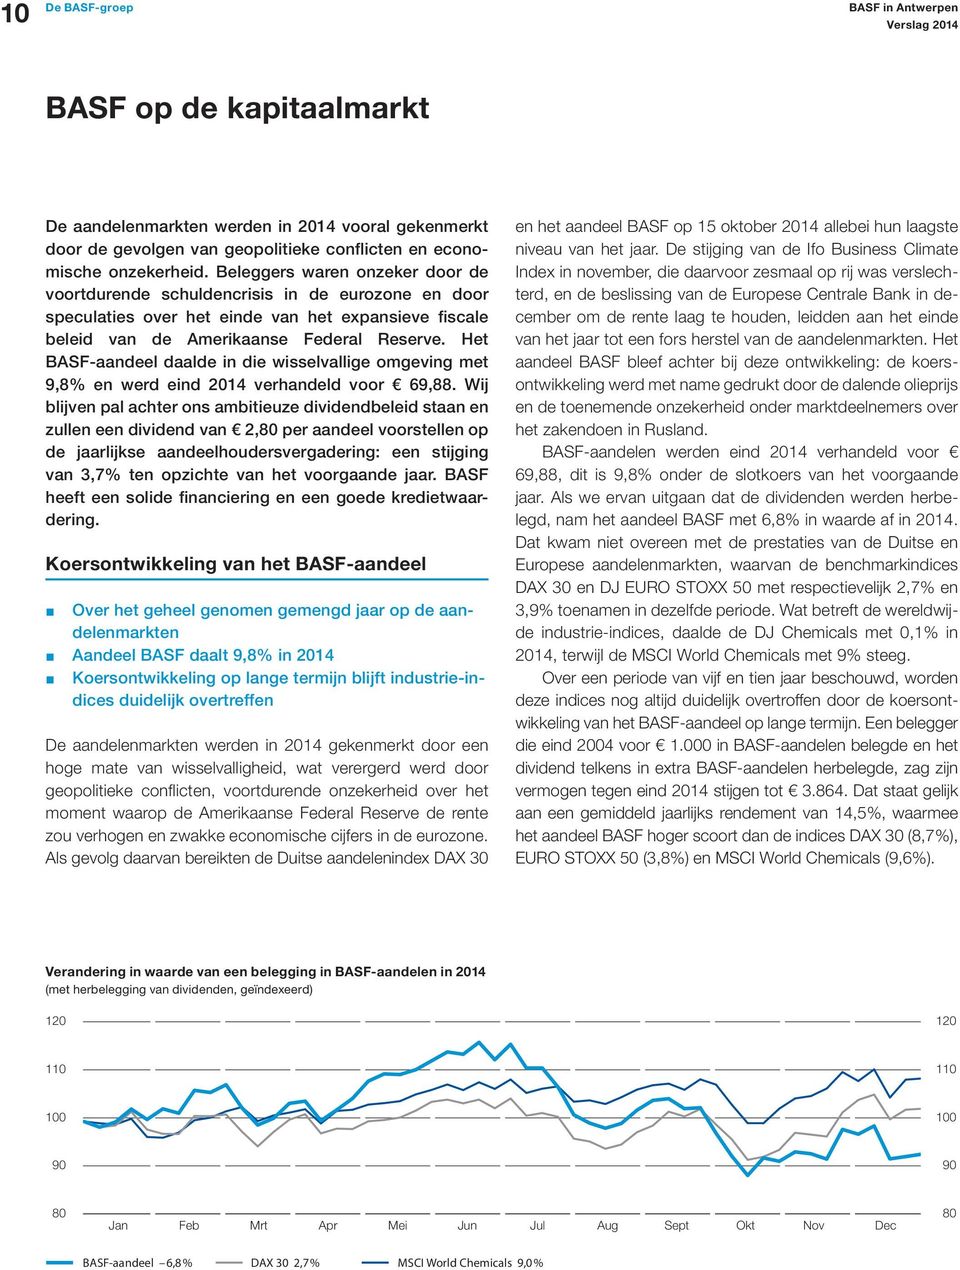 Het BASF-aandeel daalde in die wisselvallige omgeving met 9,8% en werd eind 2014 verhandeld voor 69,88.